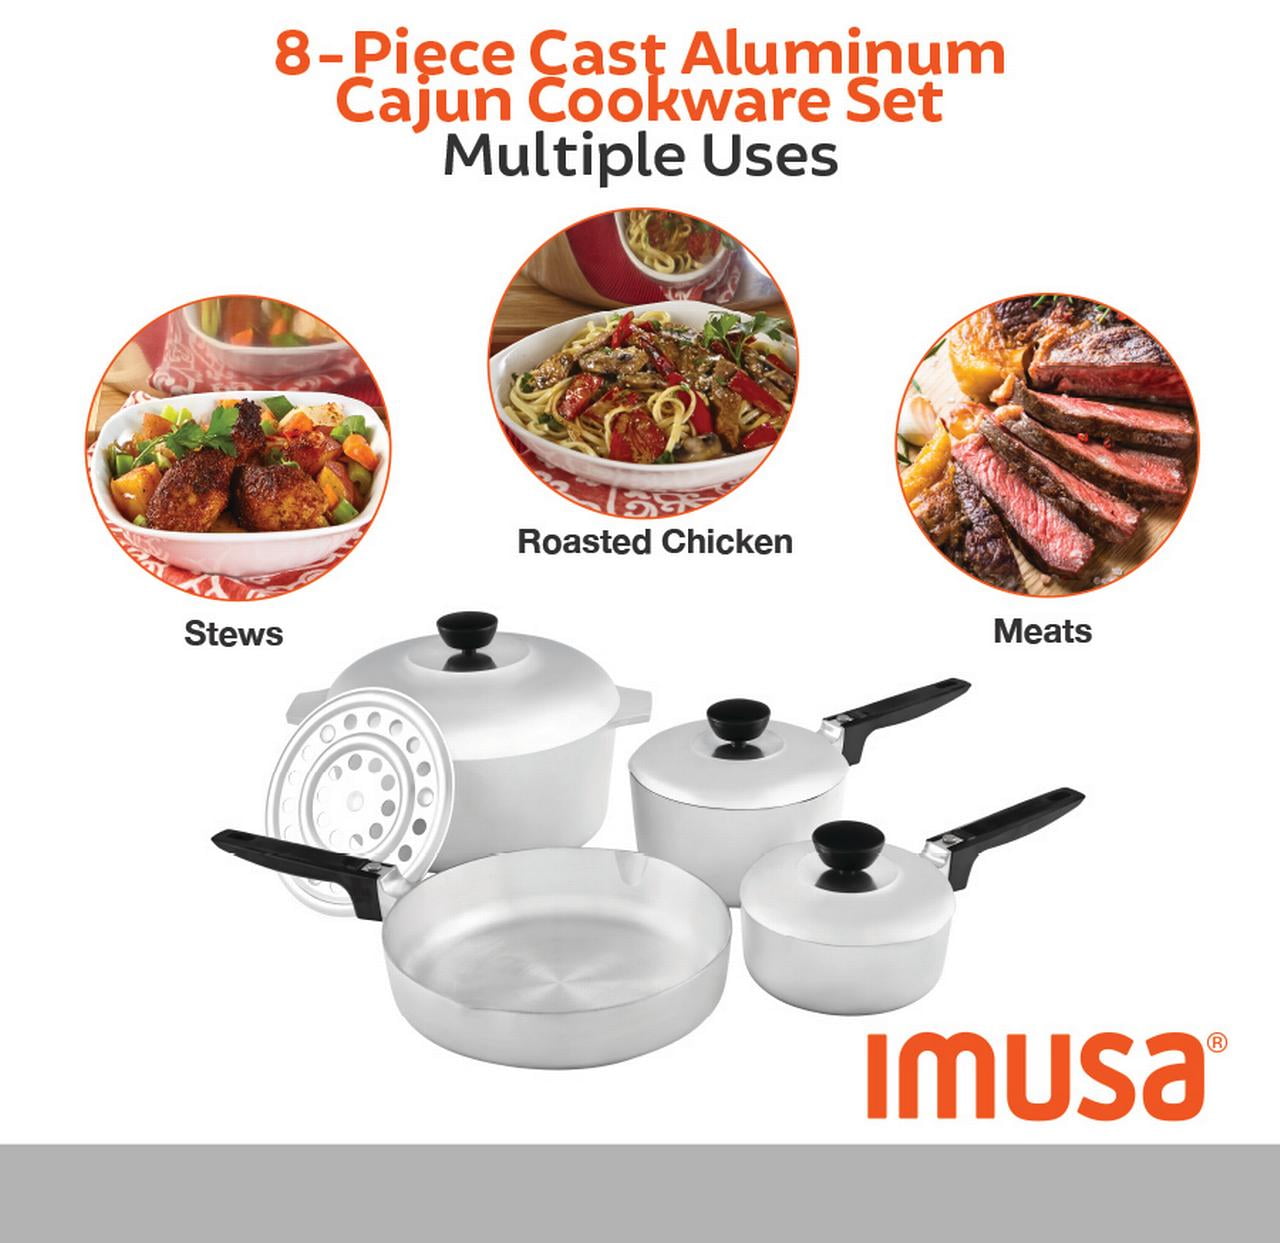 IMUSA IMUSA 8-Piece Cast Aluminum Cajun Cookware Set - IMUSA